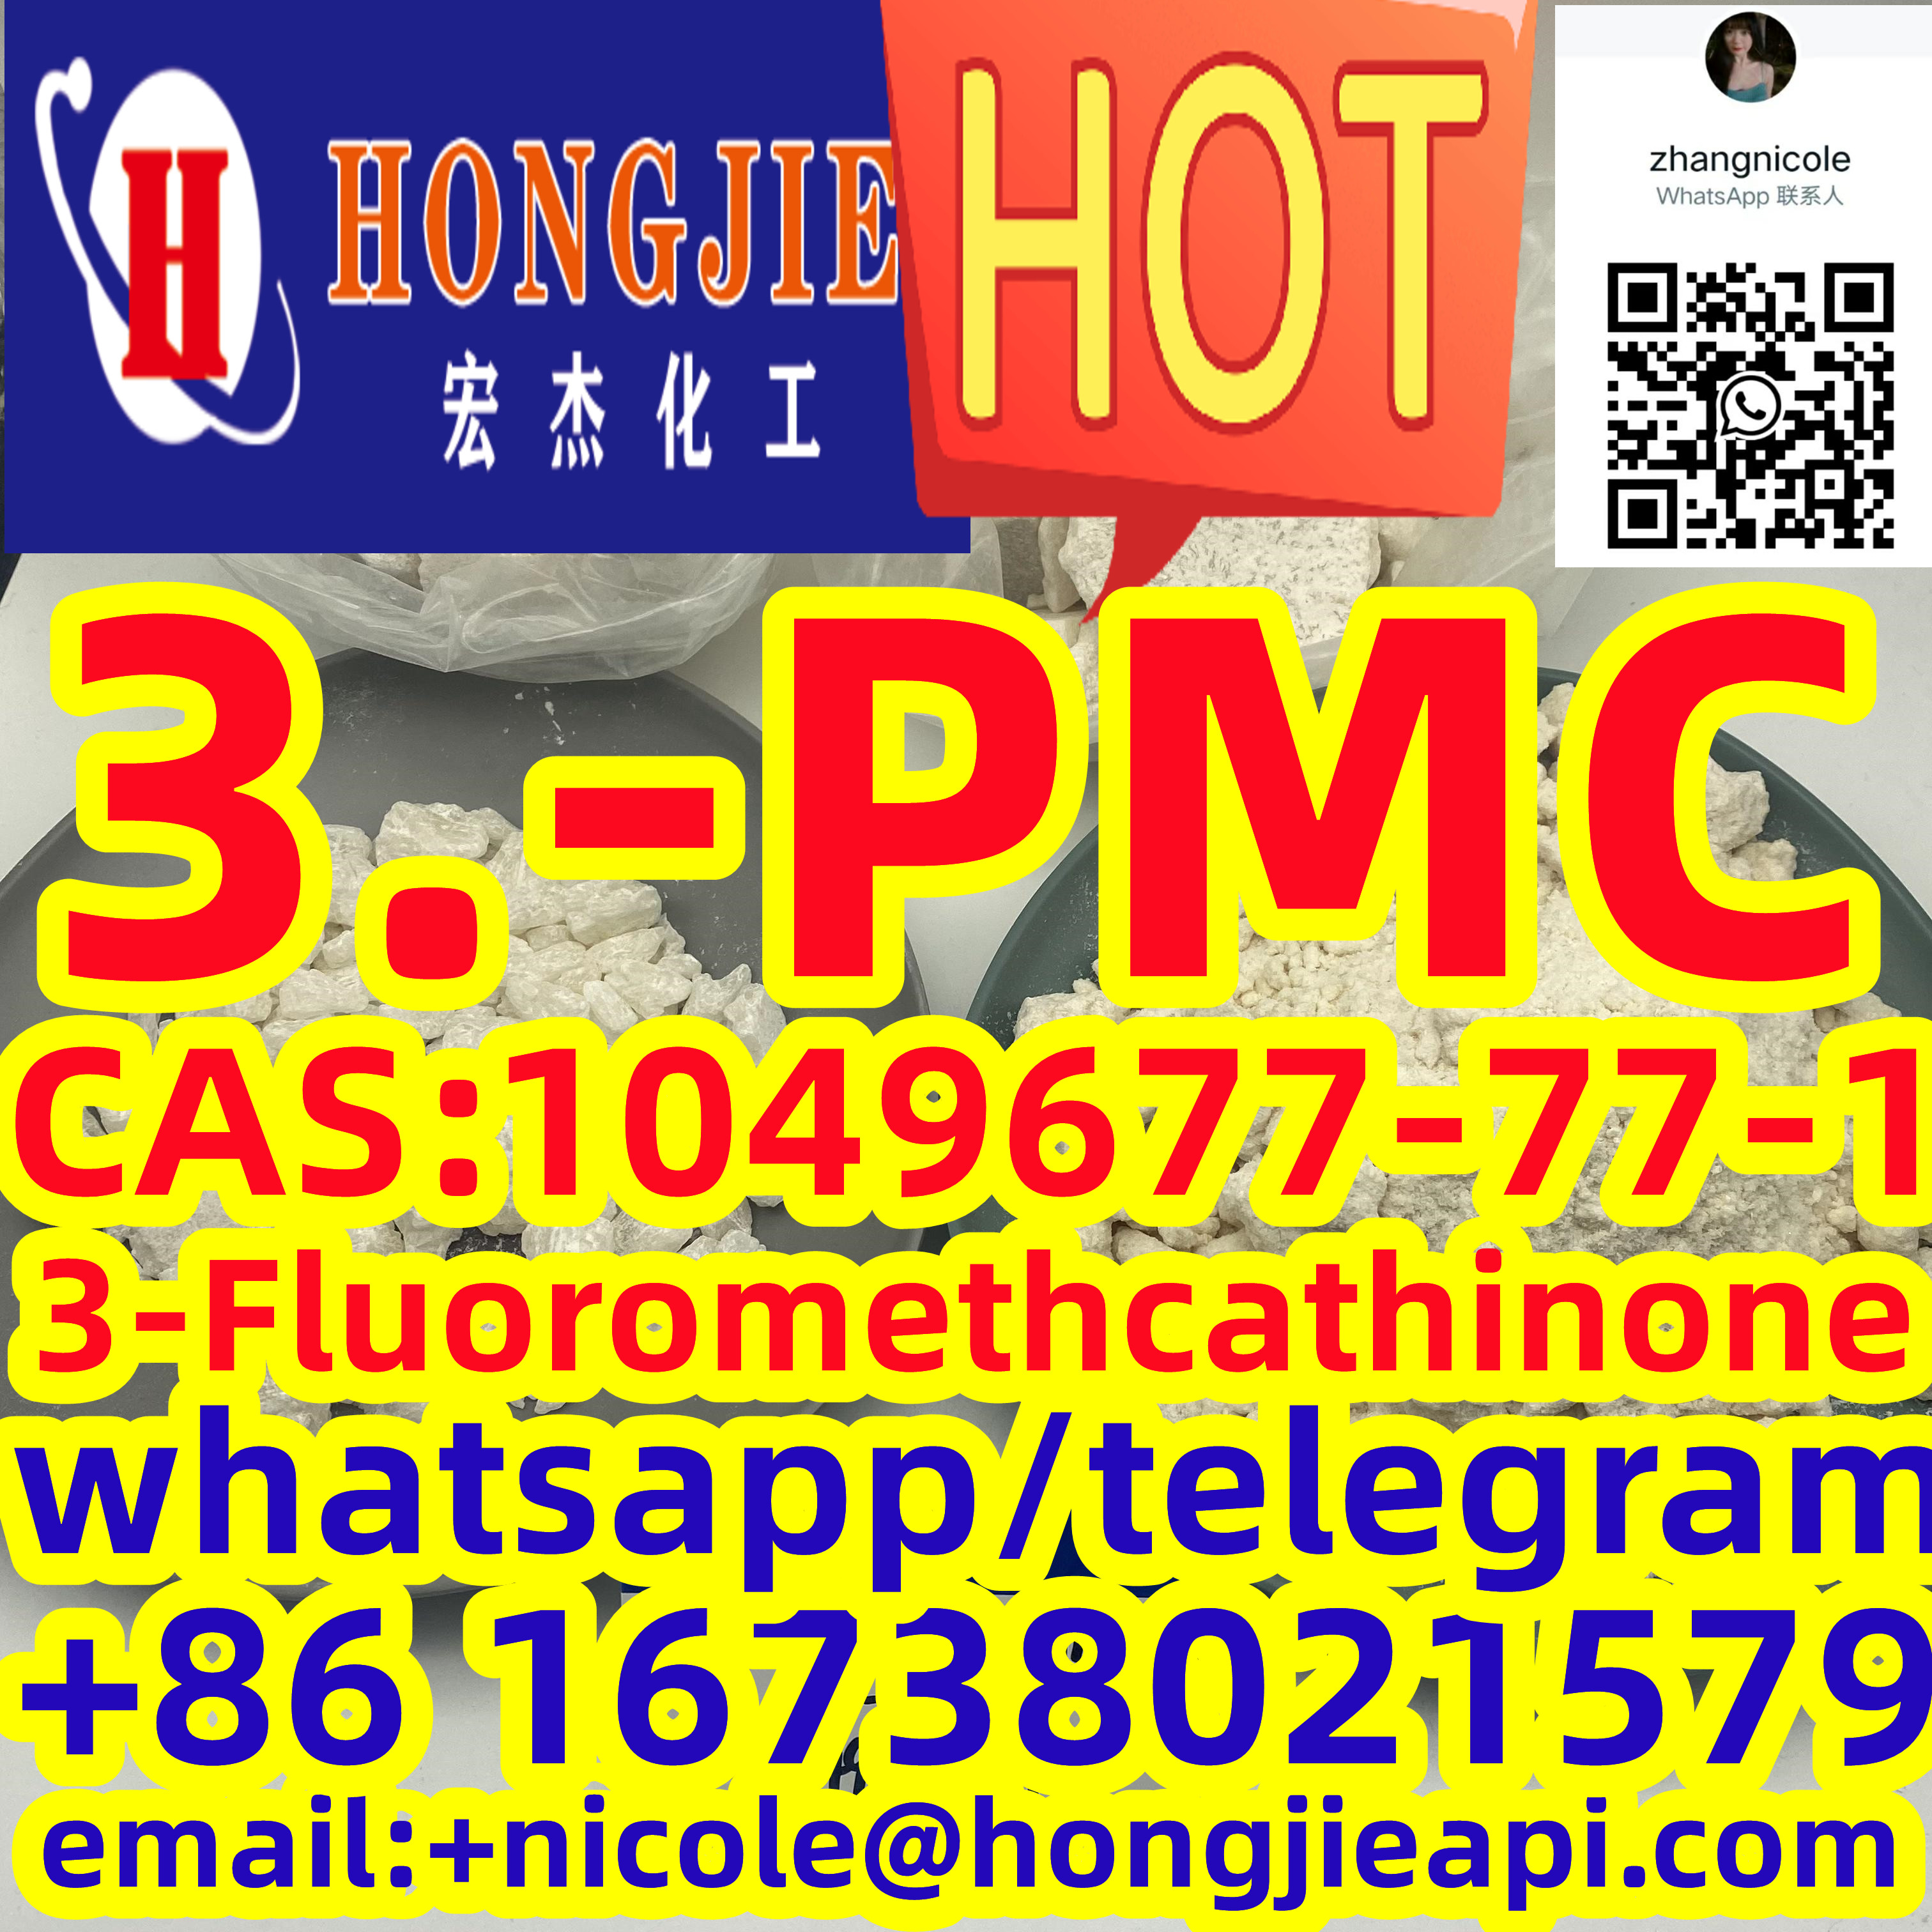 Low price 3-PMC 3-Fluoromethcathinone CAS:1049677-77-1